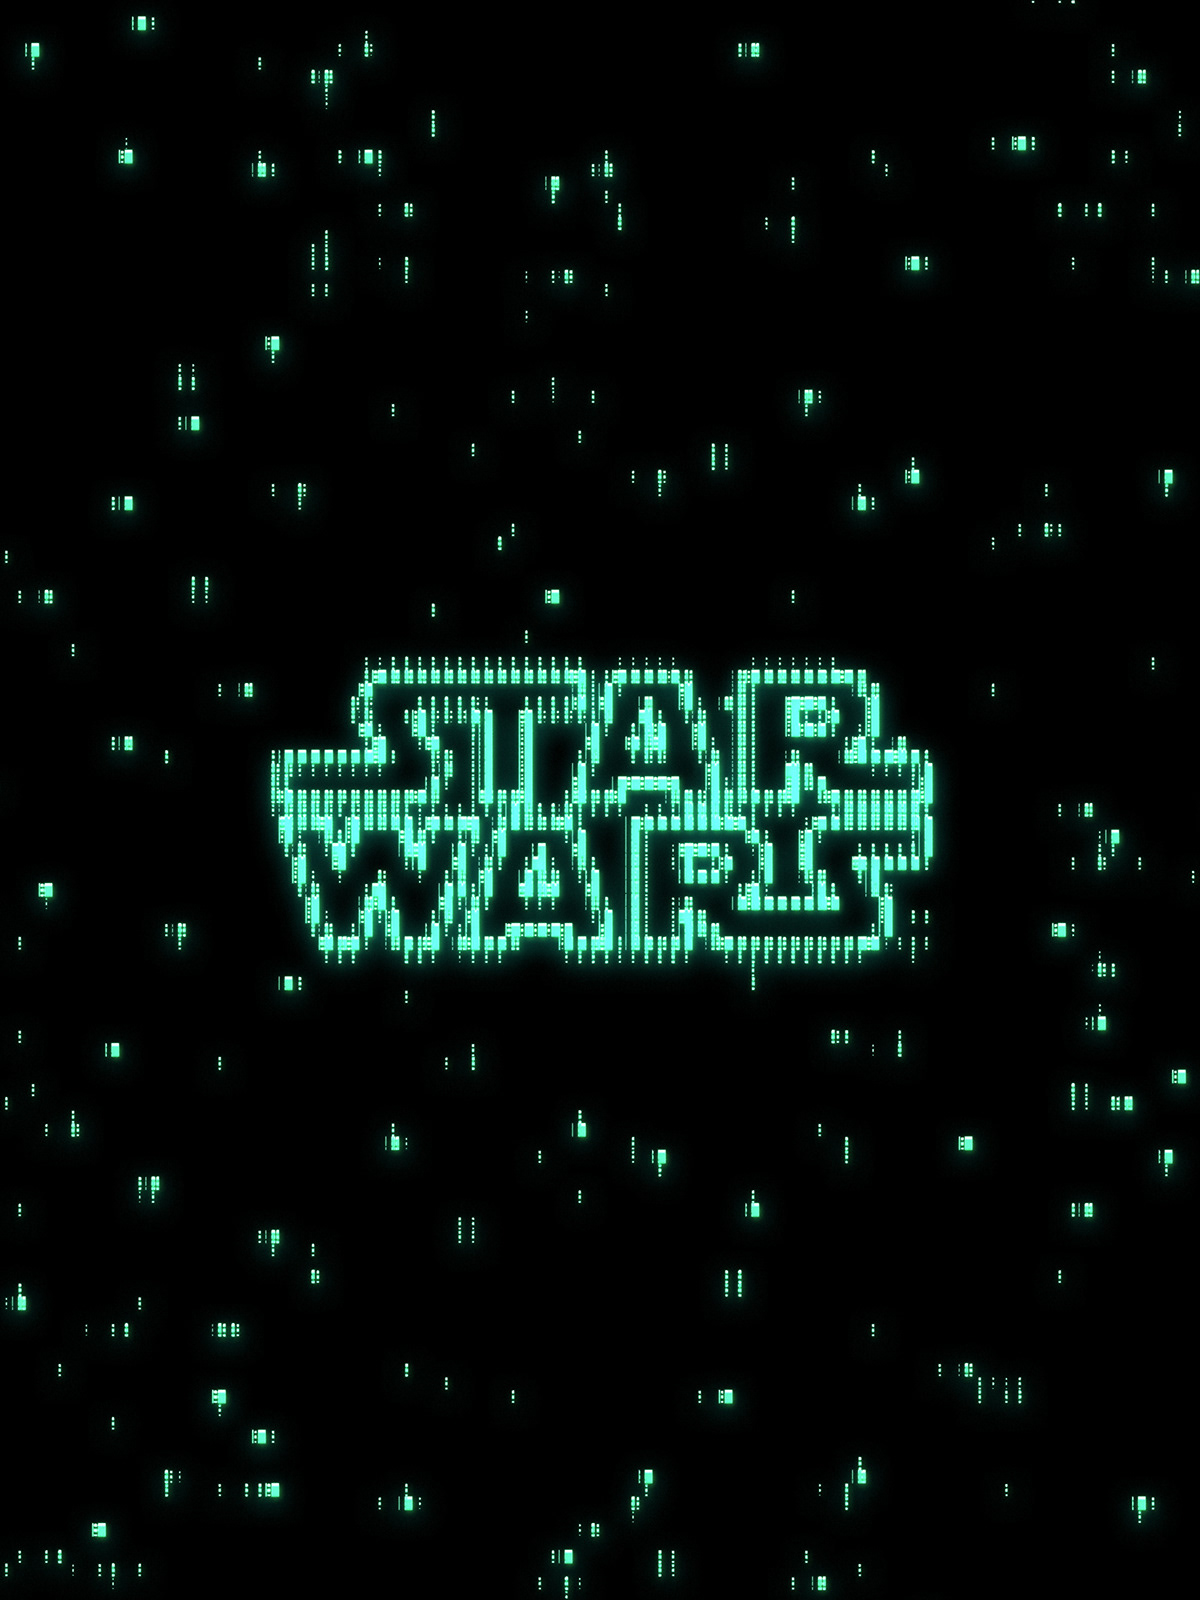 star wars jedi darth vader luke skywalker ahsoka R2D2 C3PO Chewbacca Han Solo yoda